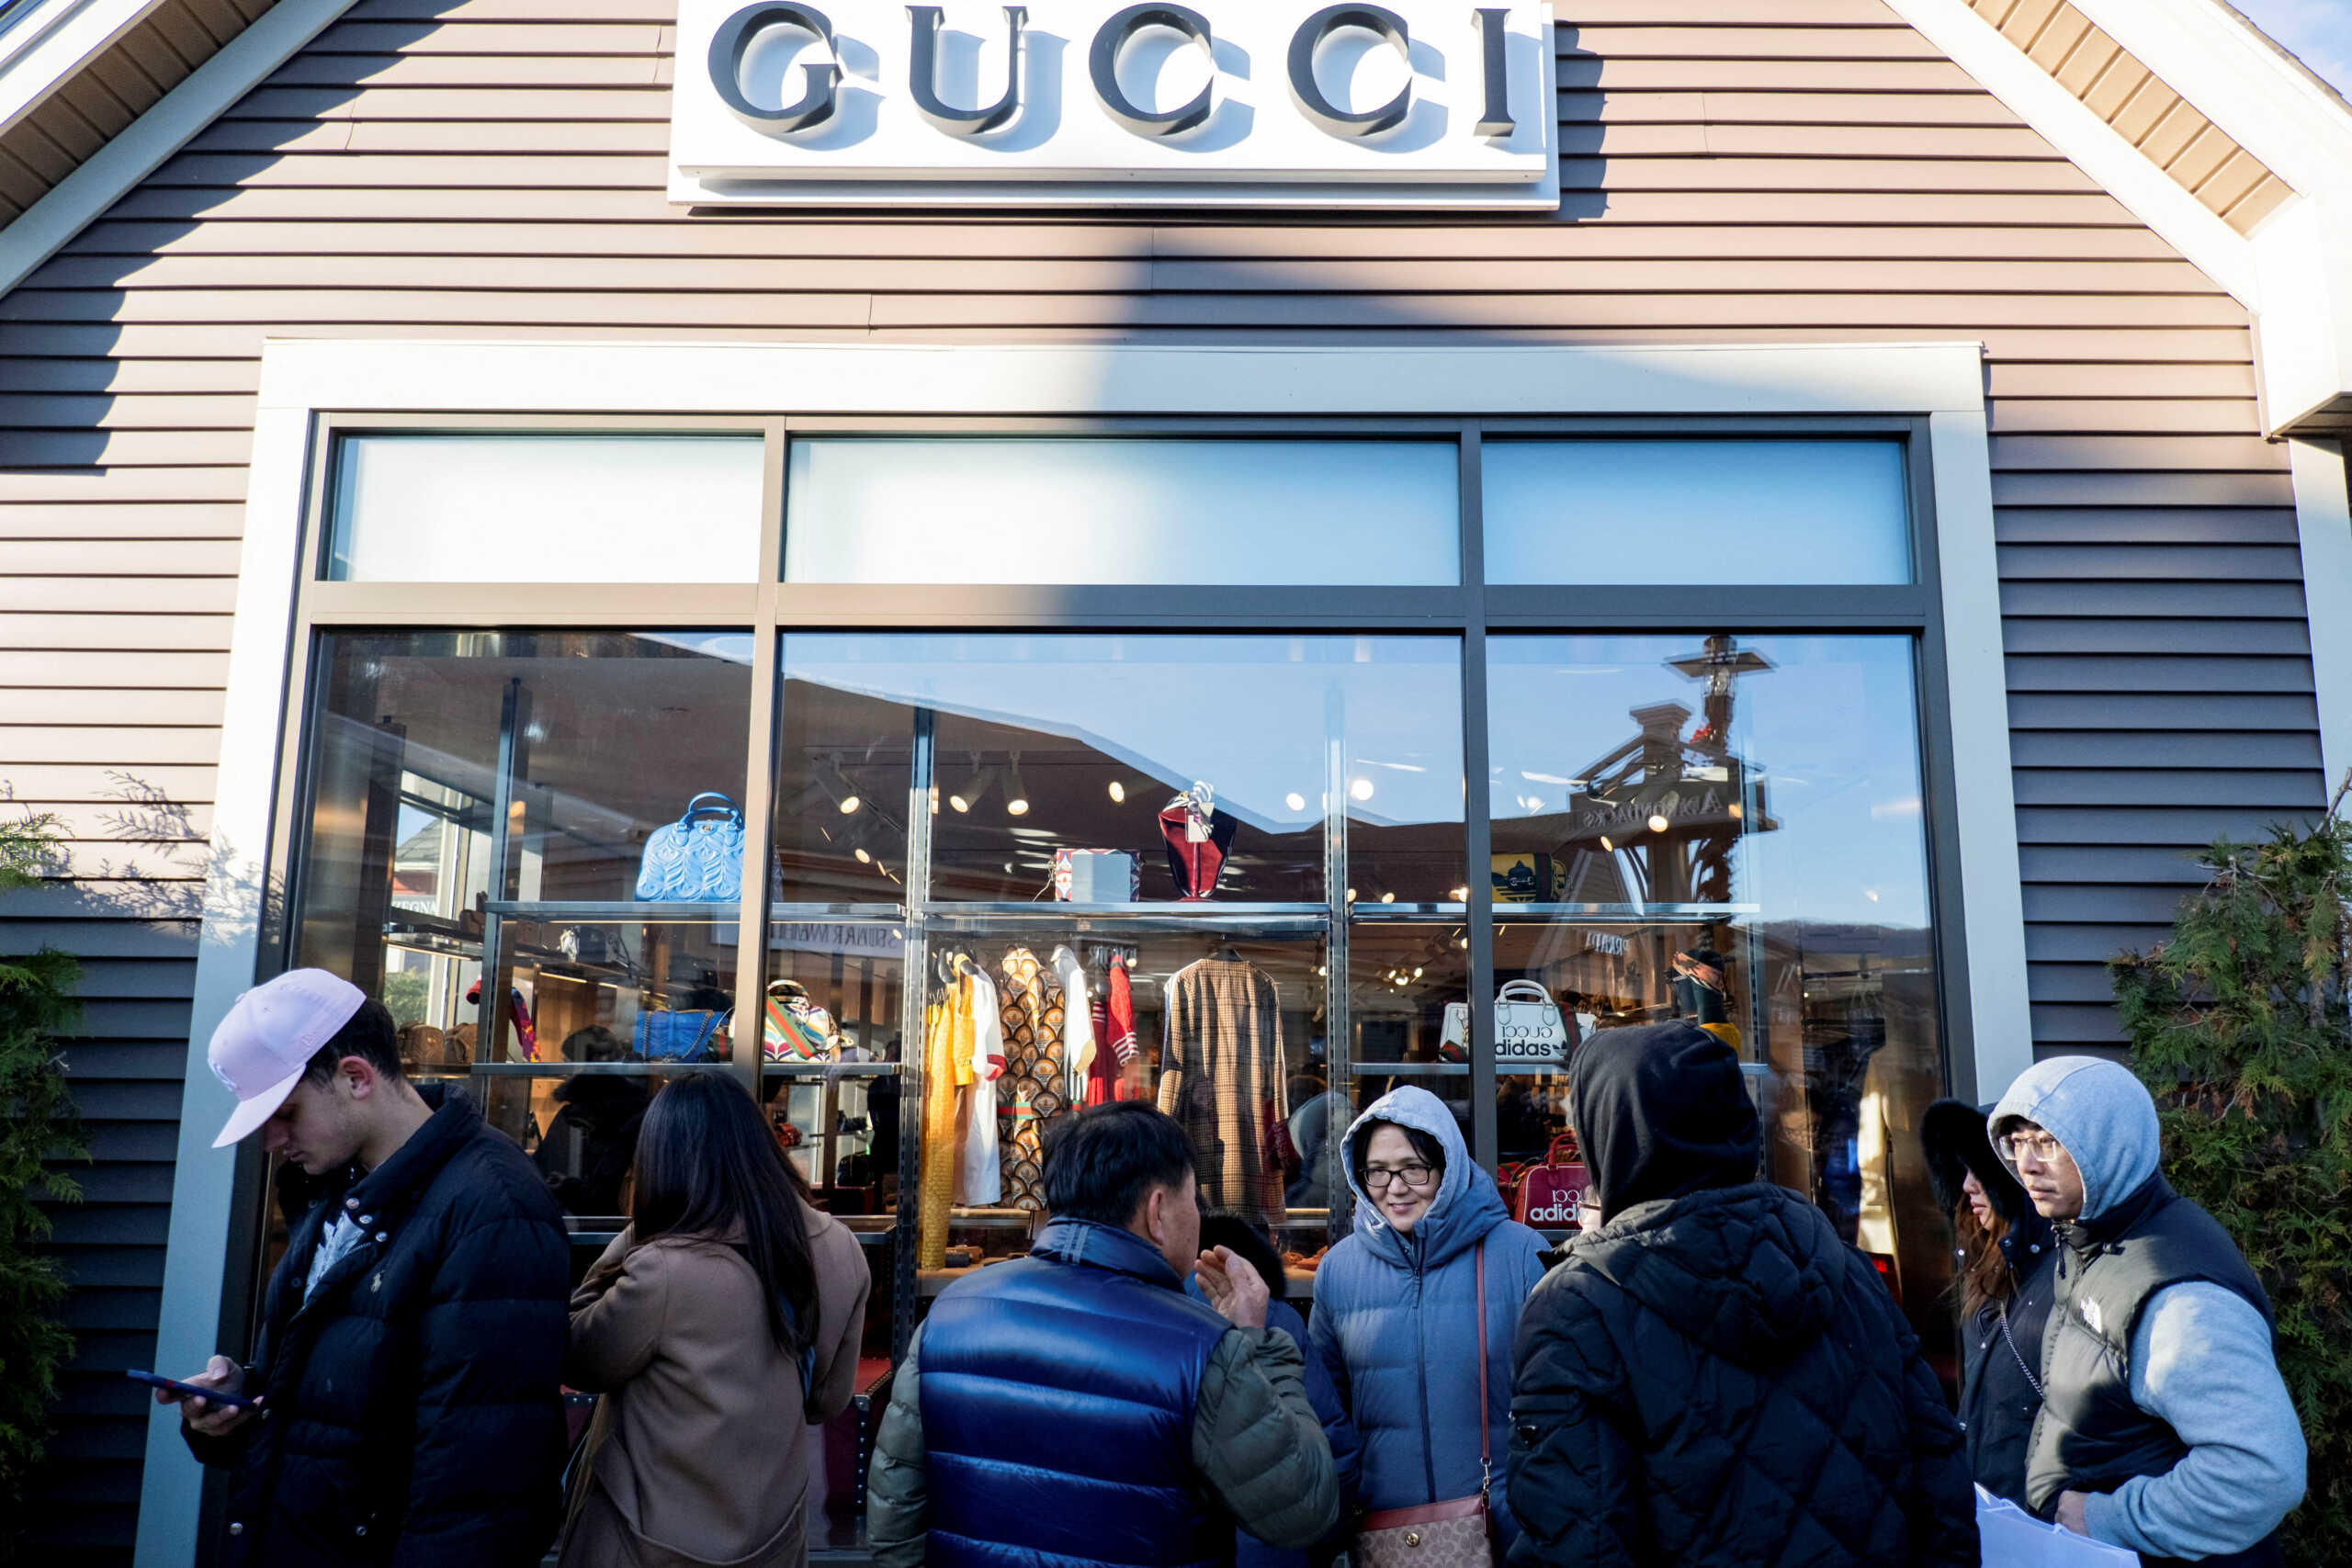 Ιταλία: Στάση εργασίας και διαμαρτυρία εργαζομένων στον οίκο Gucci – Εκφράζουν φόβους για μαζικές απολύσεις